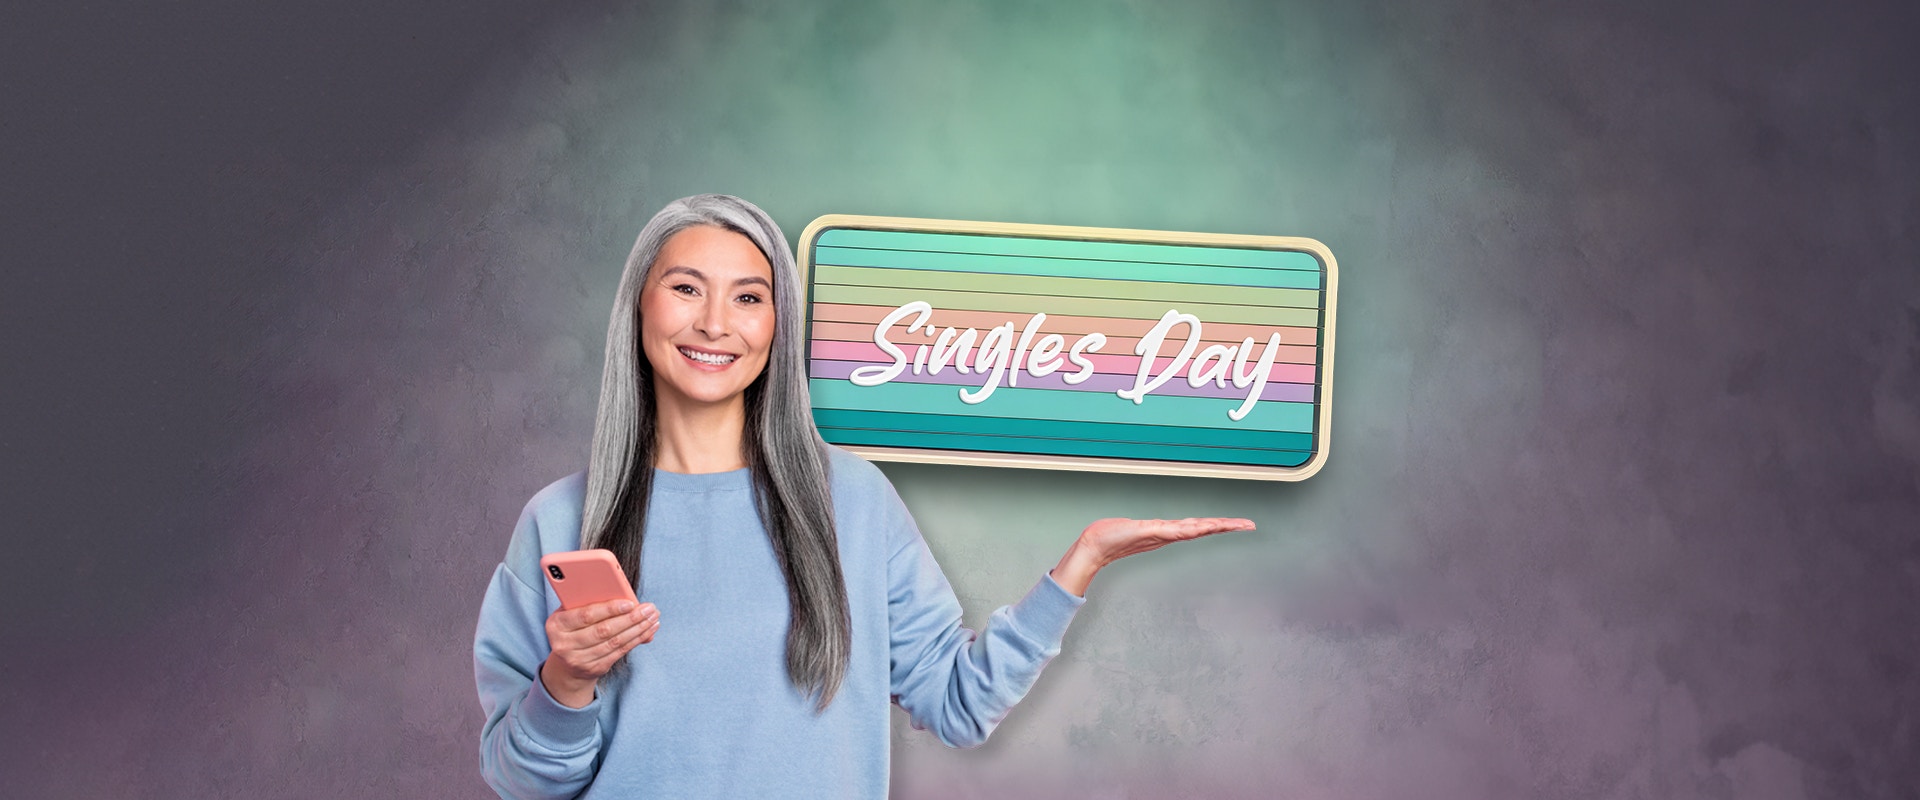 Eine Frau mit Handy und einem Schild mit der Aufschrift "Singles' Day"